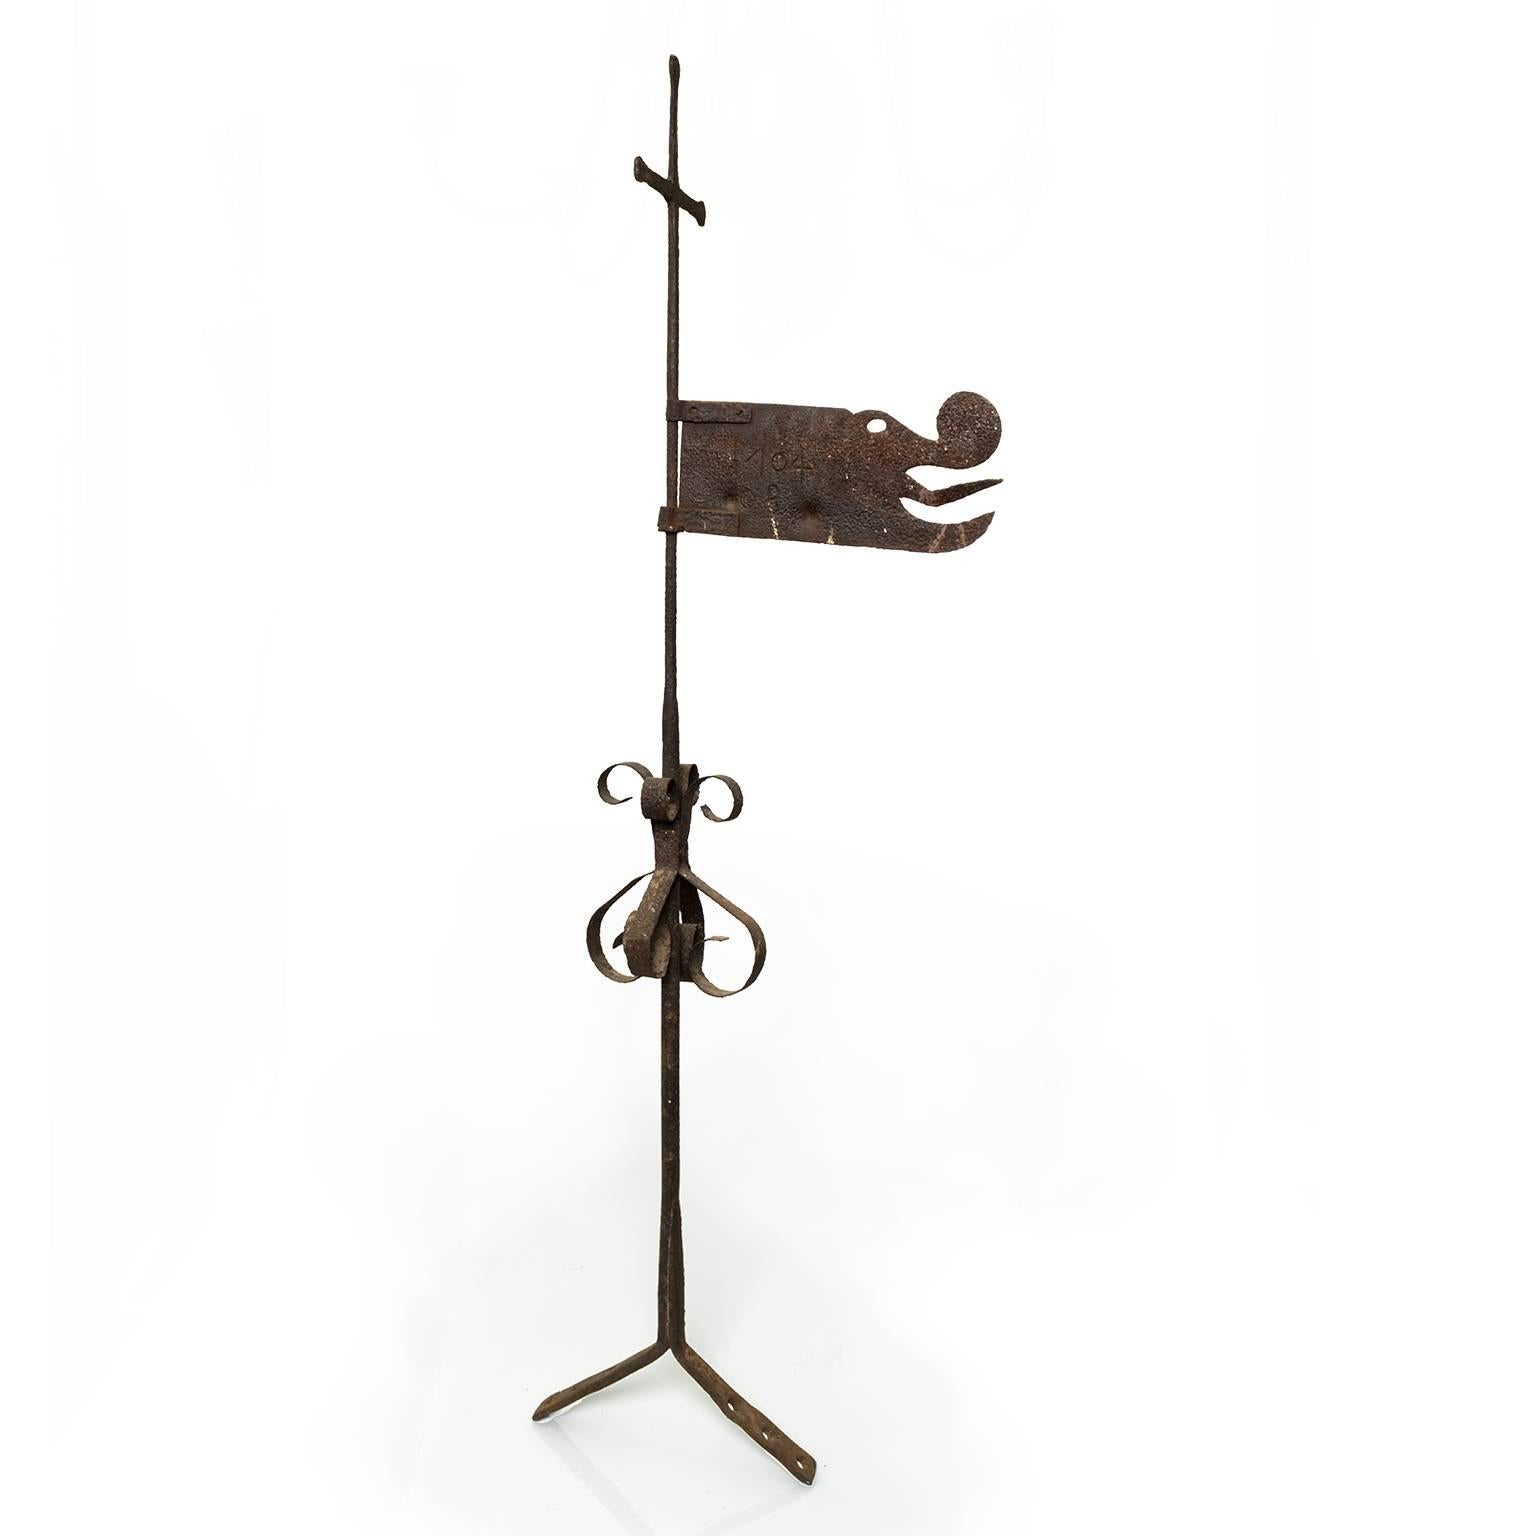 Girouette suédoise en métal (fer) représentant une tête de dragon sur une tige en forme d'épée. La date 